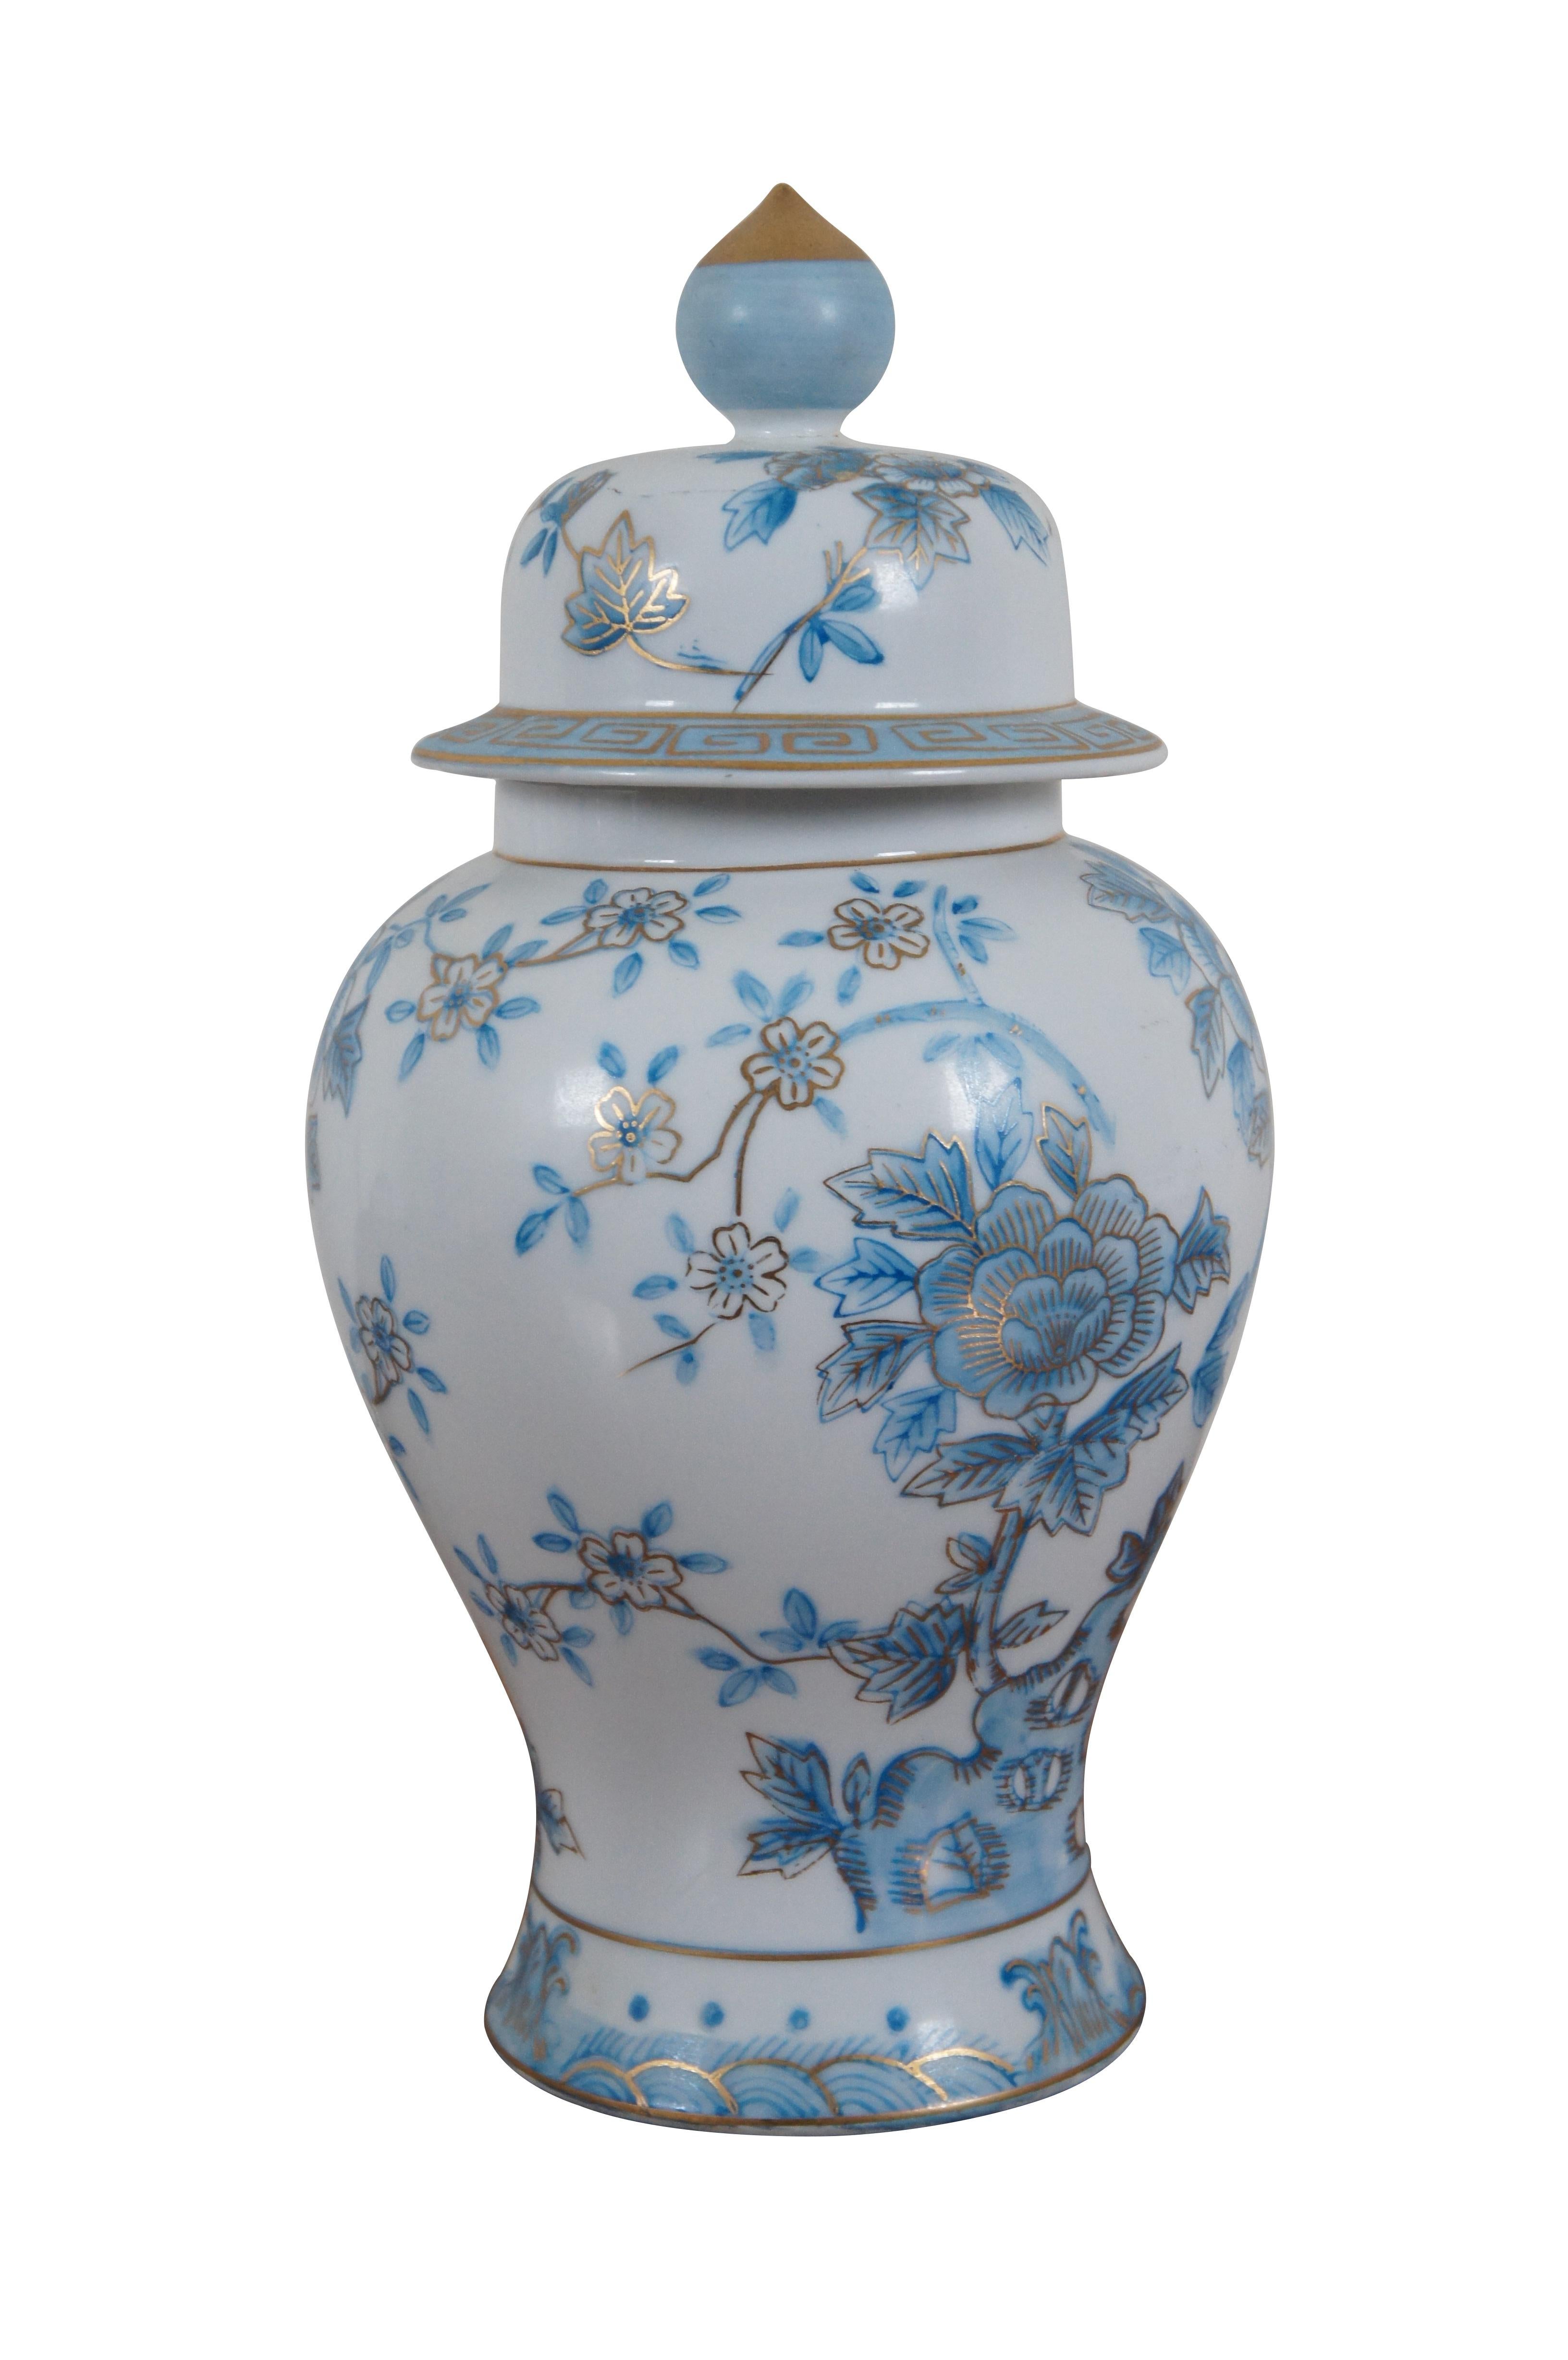 Japonisme Vintage Japan Blue & White Floral Porcelain Temple Ginger Jar Lidded Urn 12